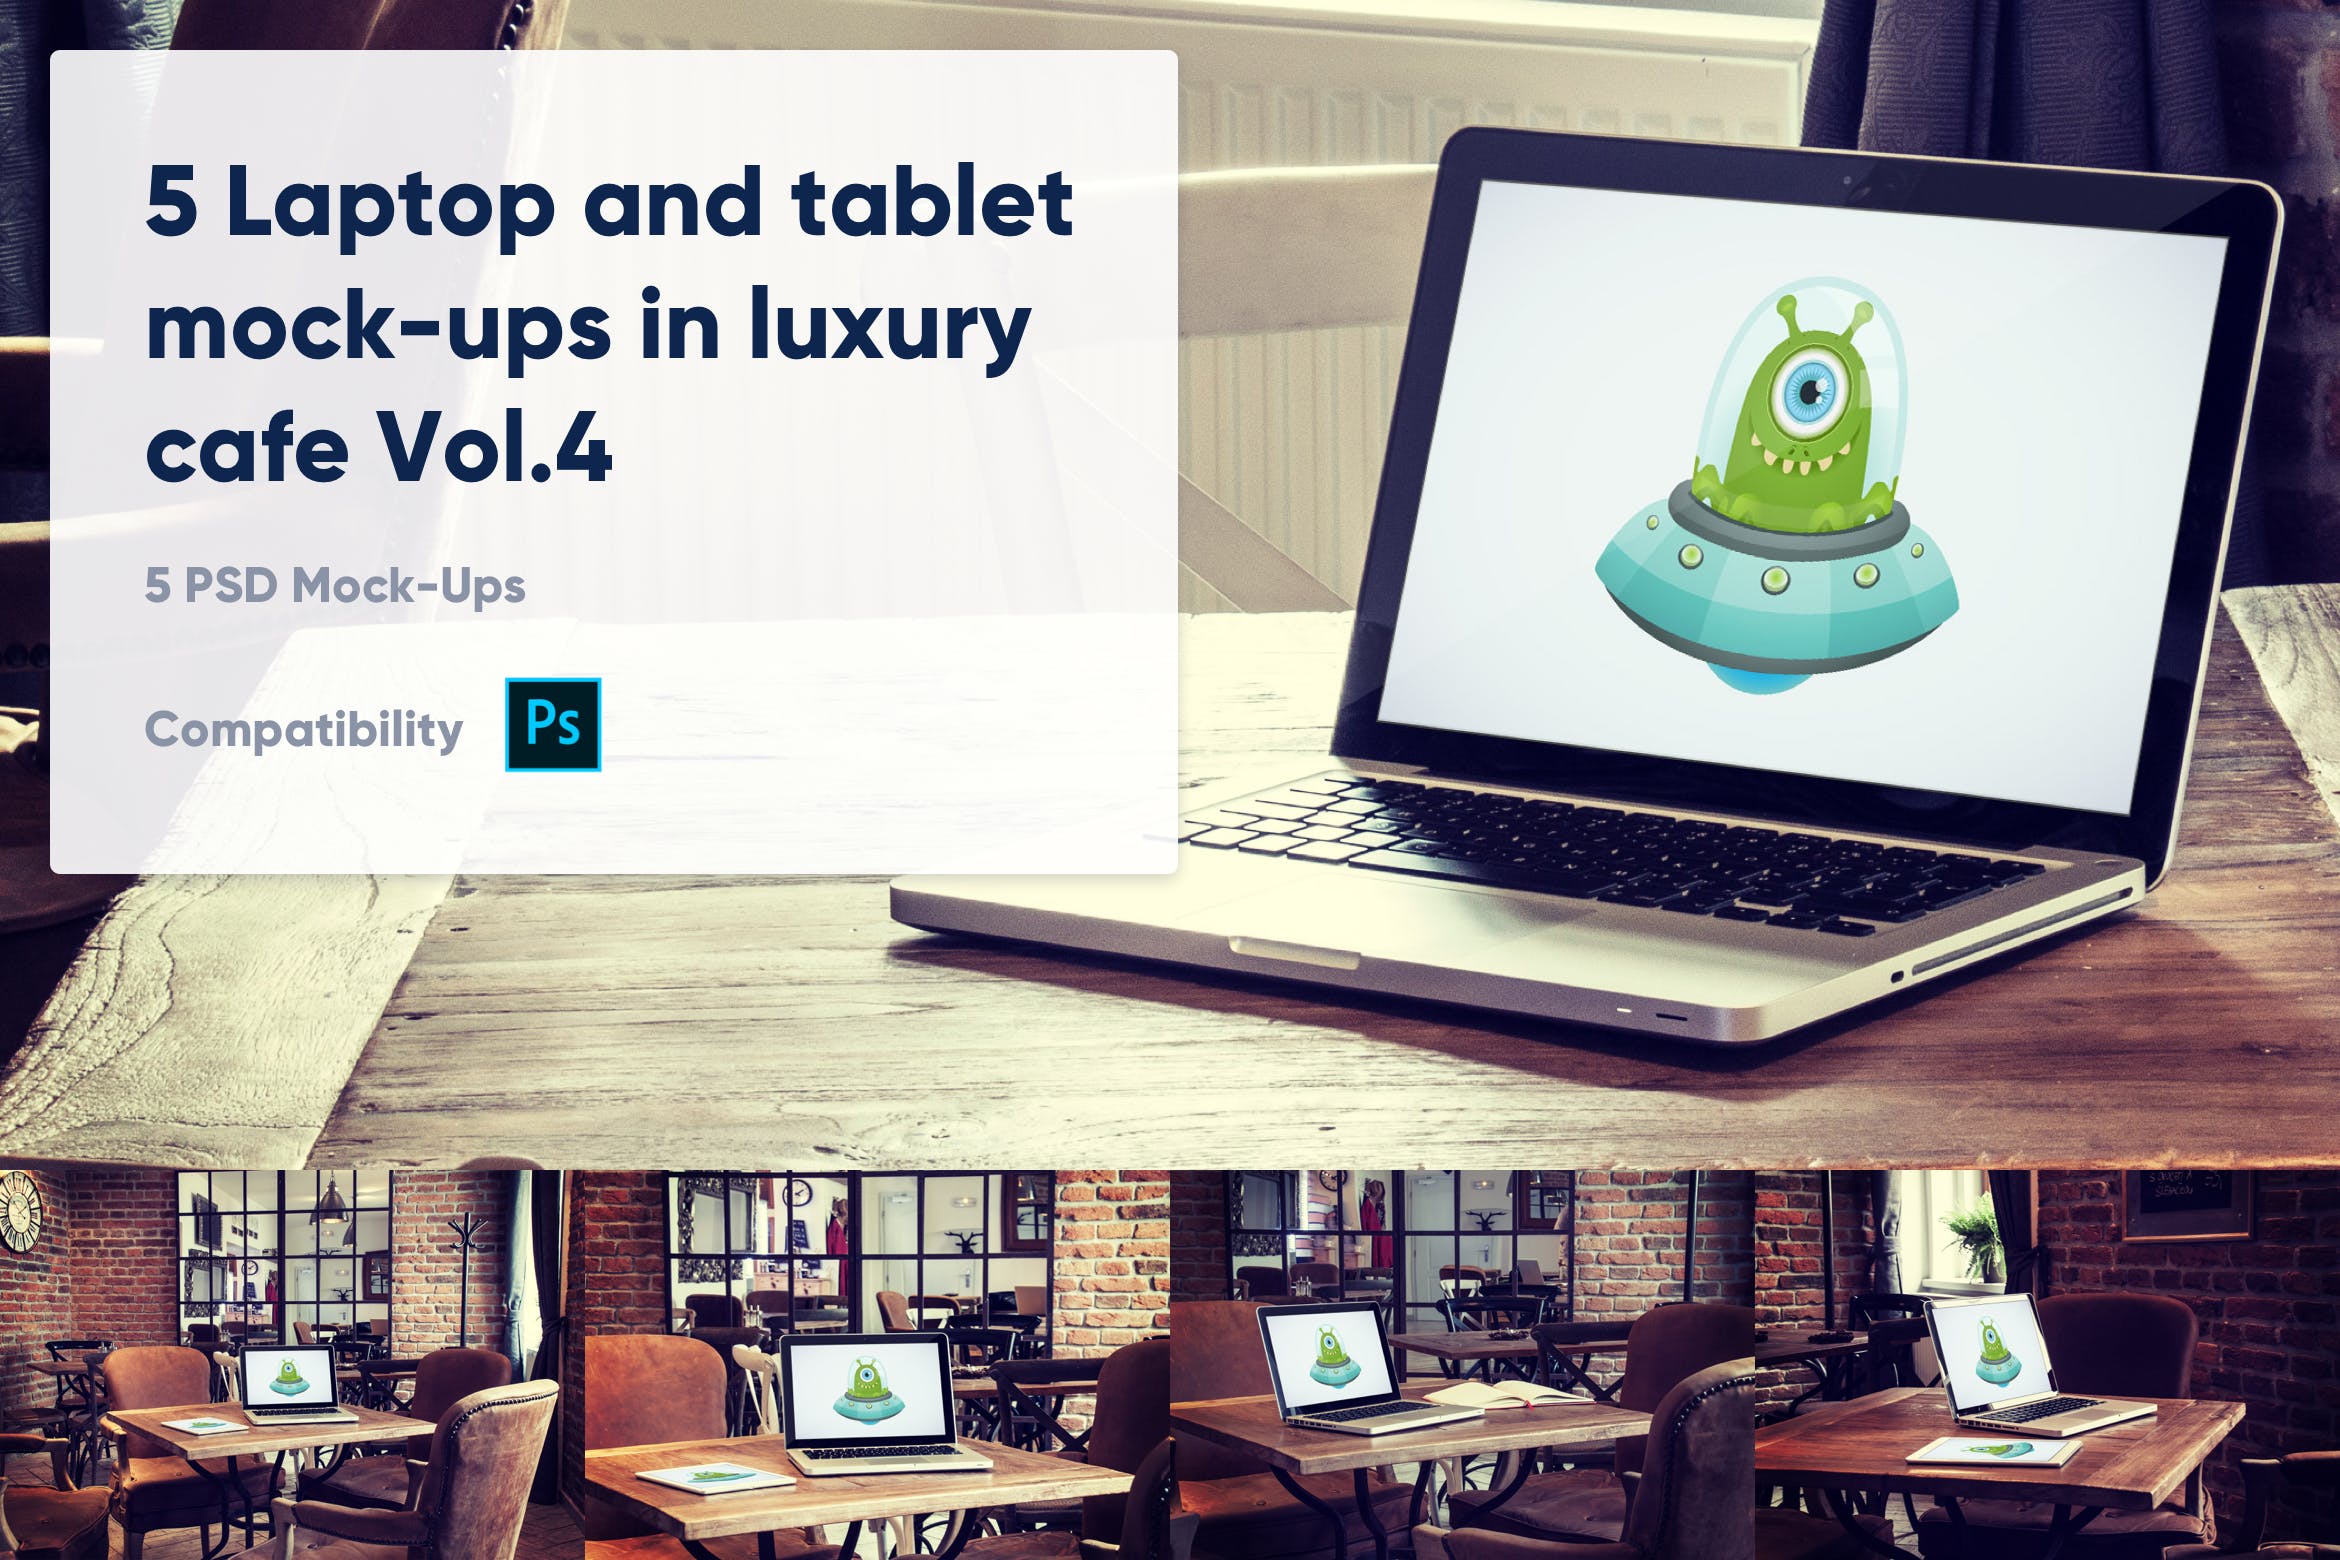 咖啡店场景MacBook&iPad屏幕预览16图库精选样机模板v4 5 Laptop and tablet mock-ups in cafe Vol. 4插图